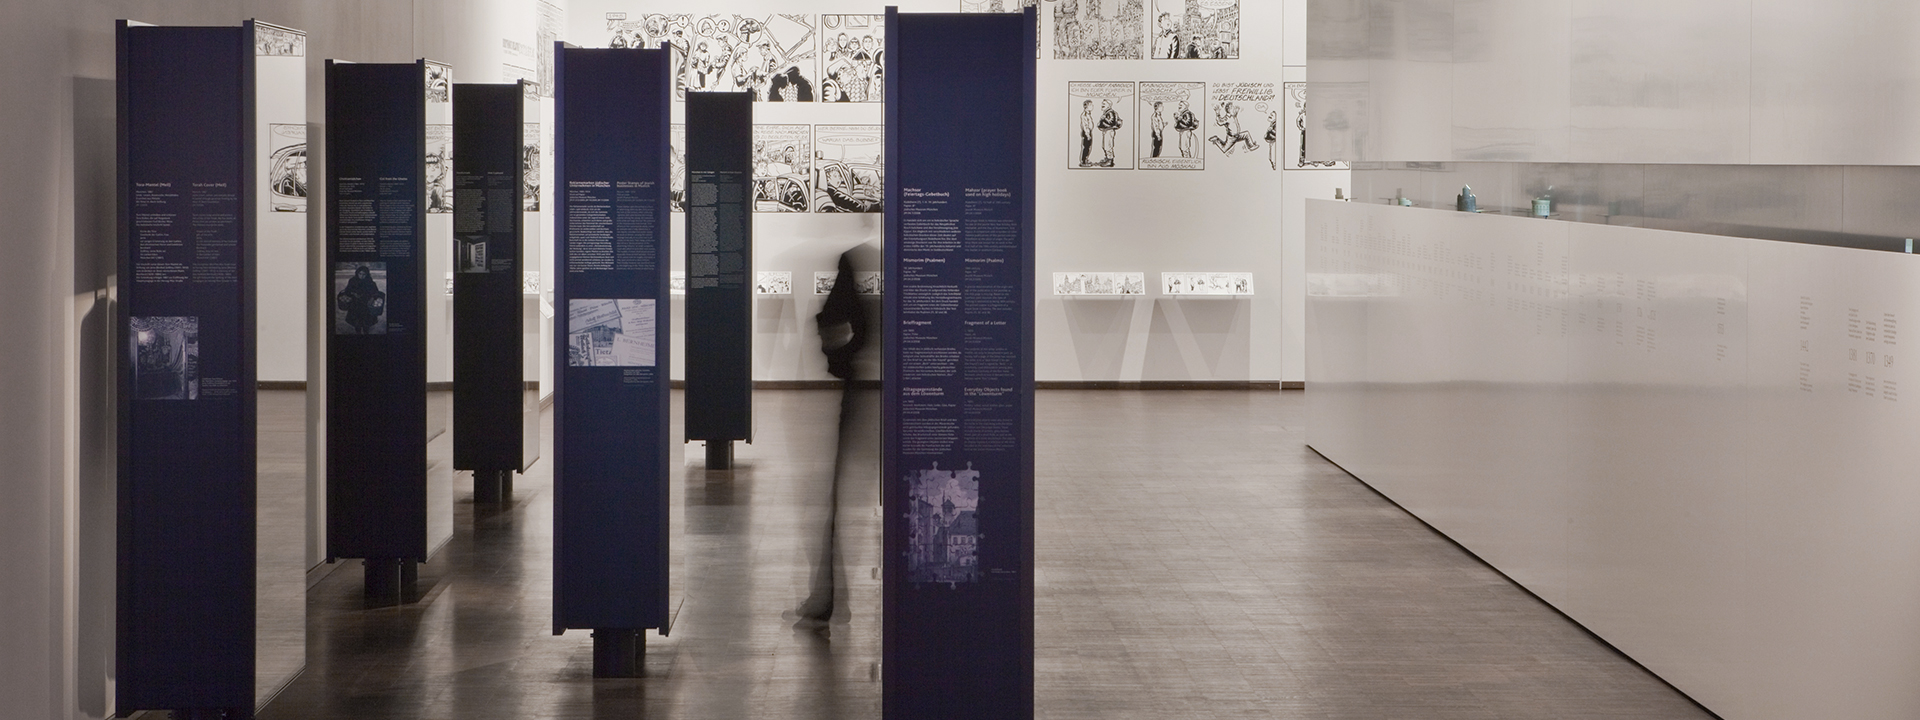 Installation "Dinge" in der Dauerausstellung Stimmen Orte Zeiten – Juden in München